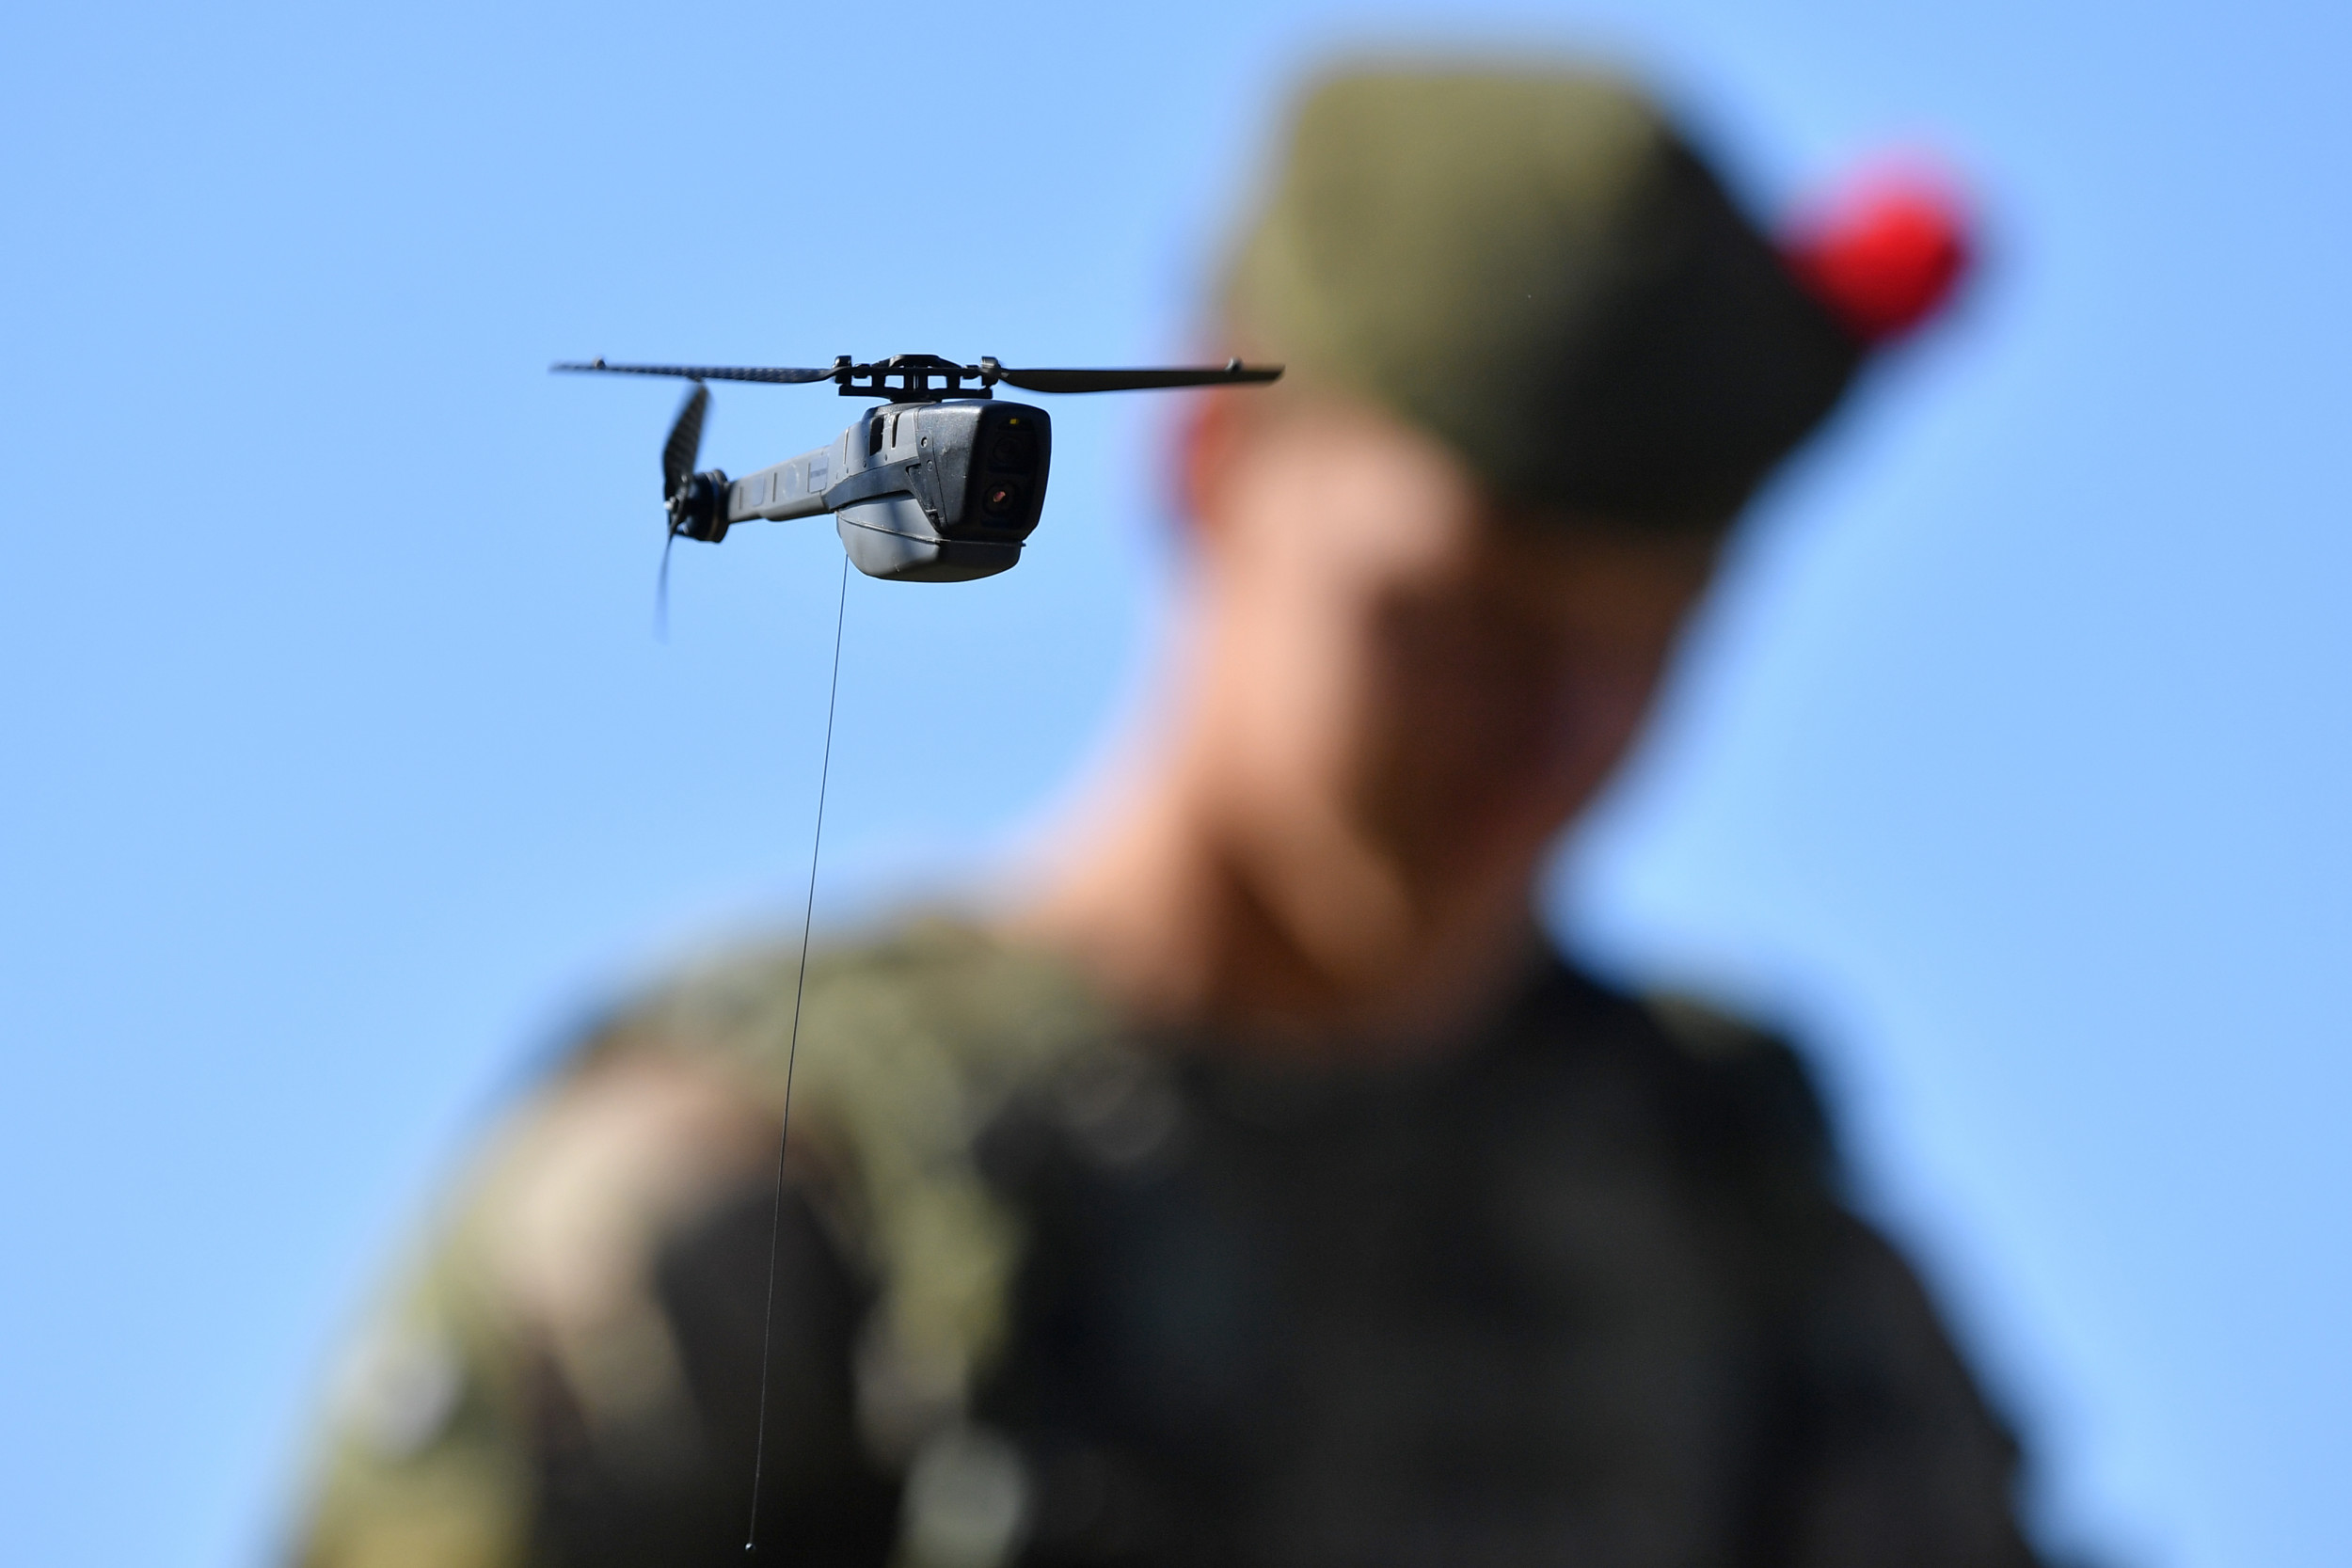 https://d.newsweek.com/en/full/2105041/ukraine-get-850-black-hornet-drones.jpg